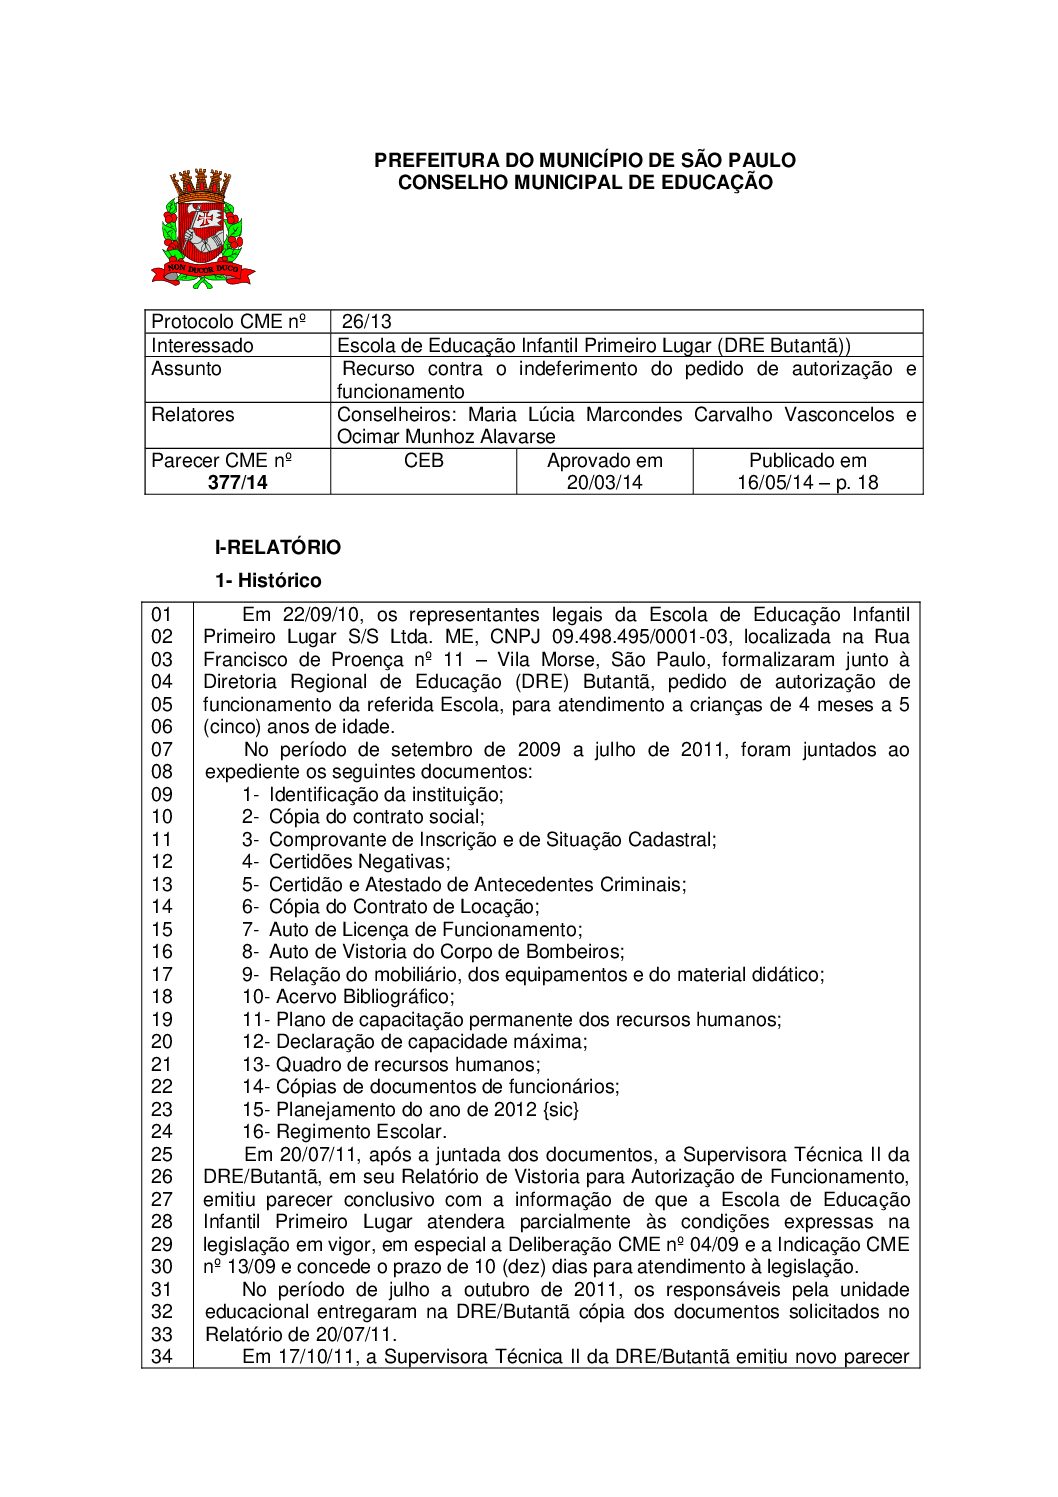 Parecer CME nº 377/2014 - Escola de Educação Infantil Primeiro Lugar (DRE Butantã) - Recurso contra o indeferimento do pedido de autorização e funcionamento